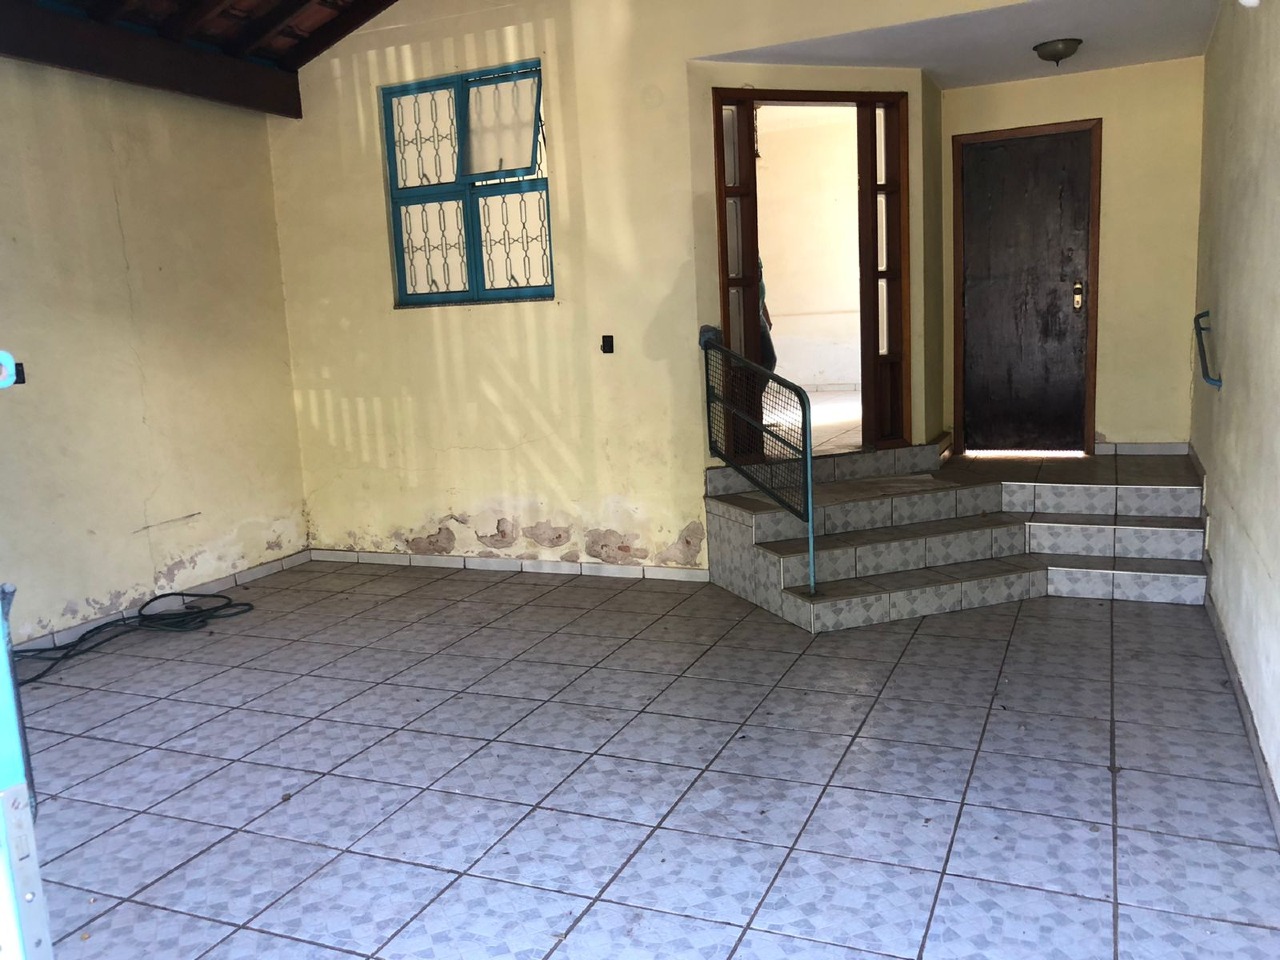 Casa para comprar, 2 quartos, 2 vagas, no bairro Cidade Alta em Piracicaba - SP